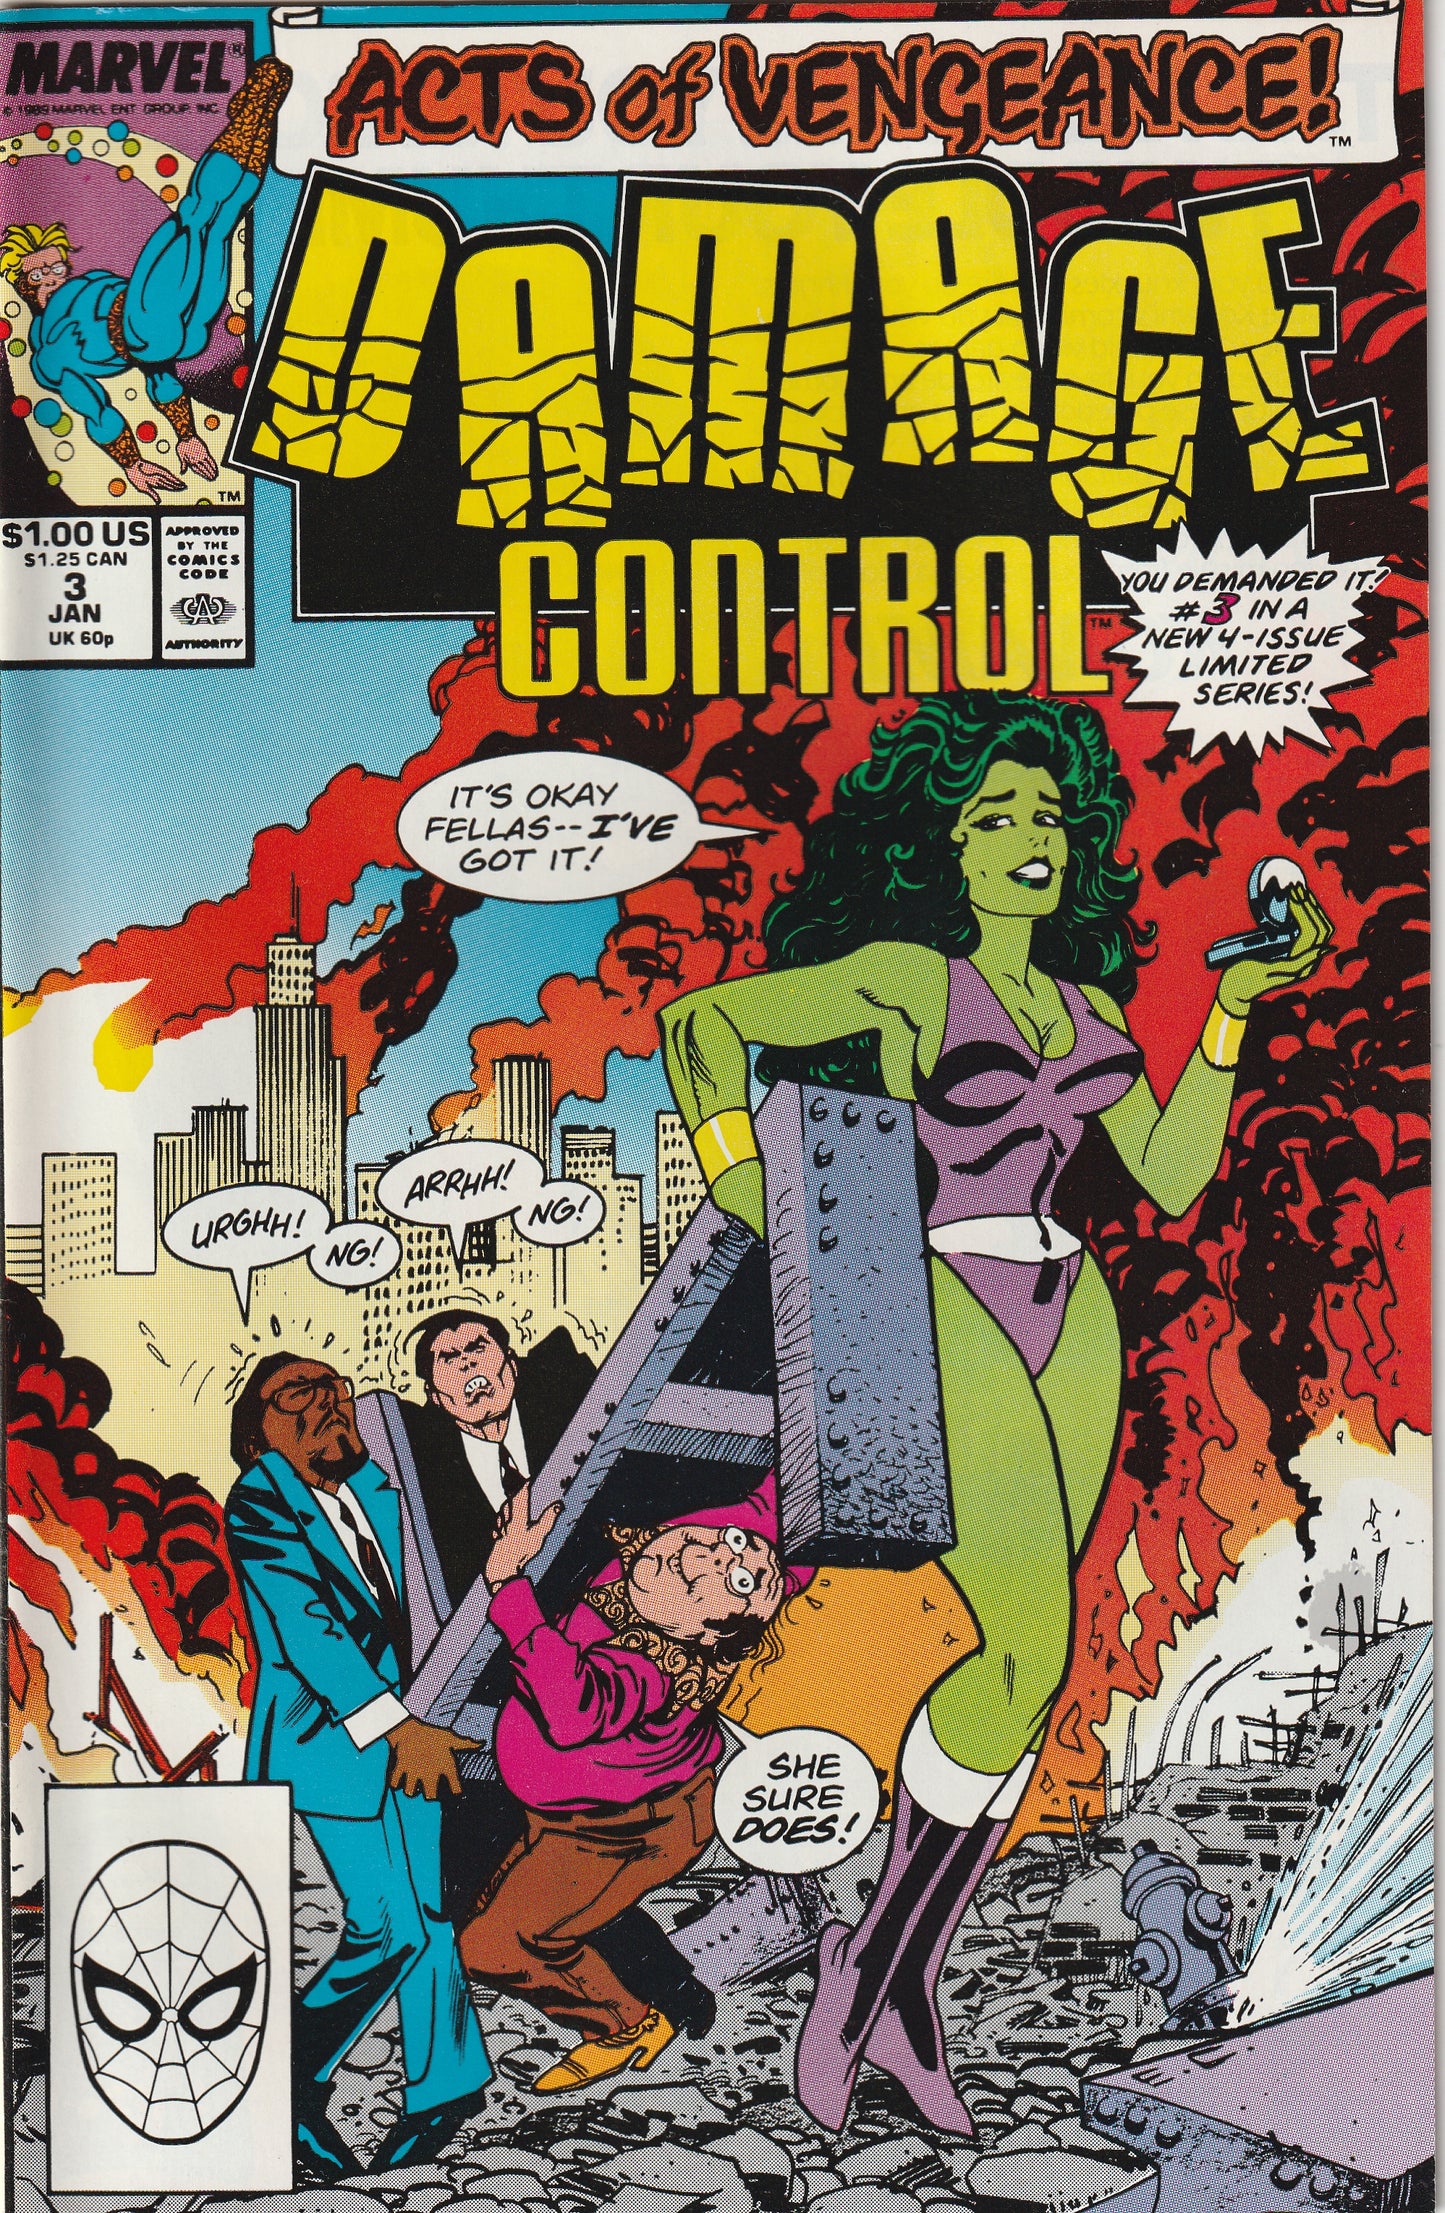 Damage Control #3 (Vol 2, 1989)